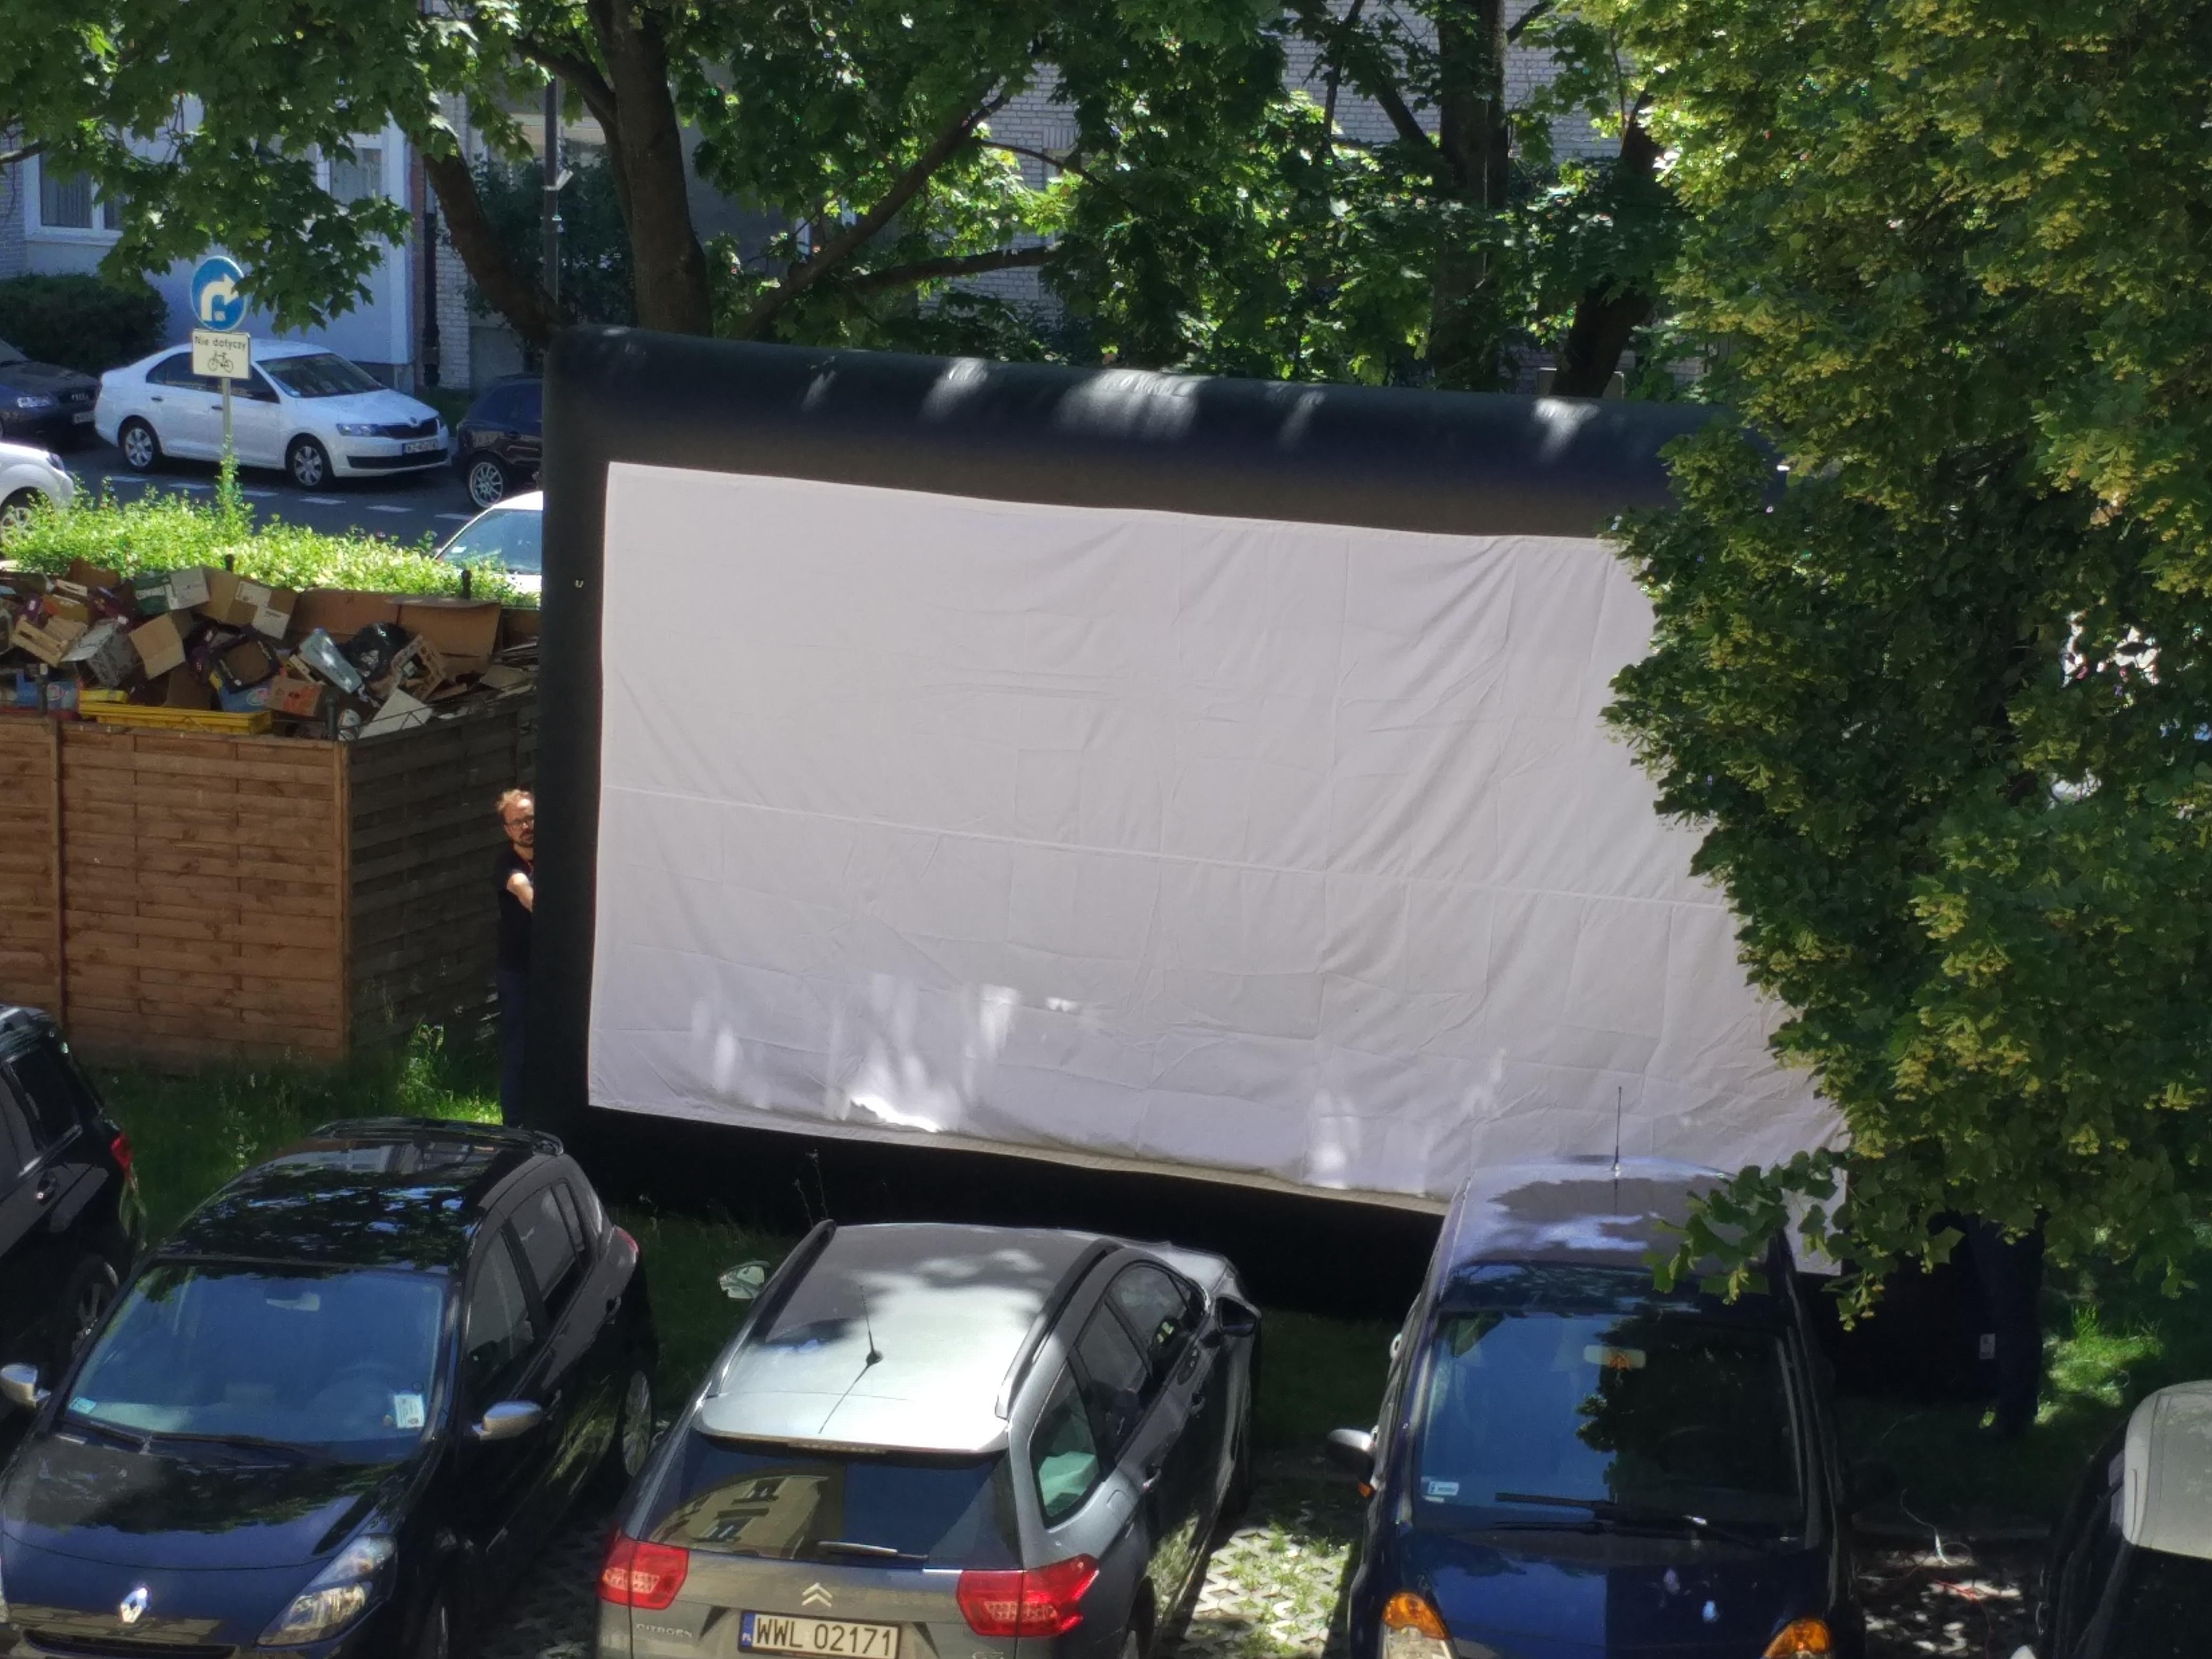 Ekran pneumatyczny do plenerowych projekcji filmowych rozstawiony na parkingu.